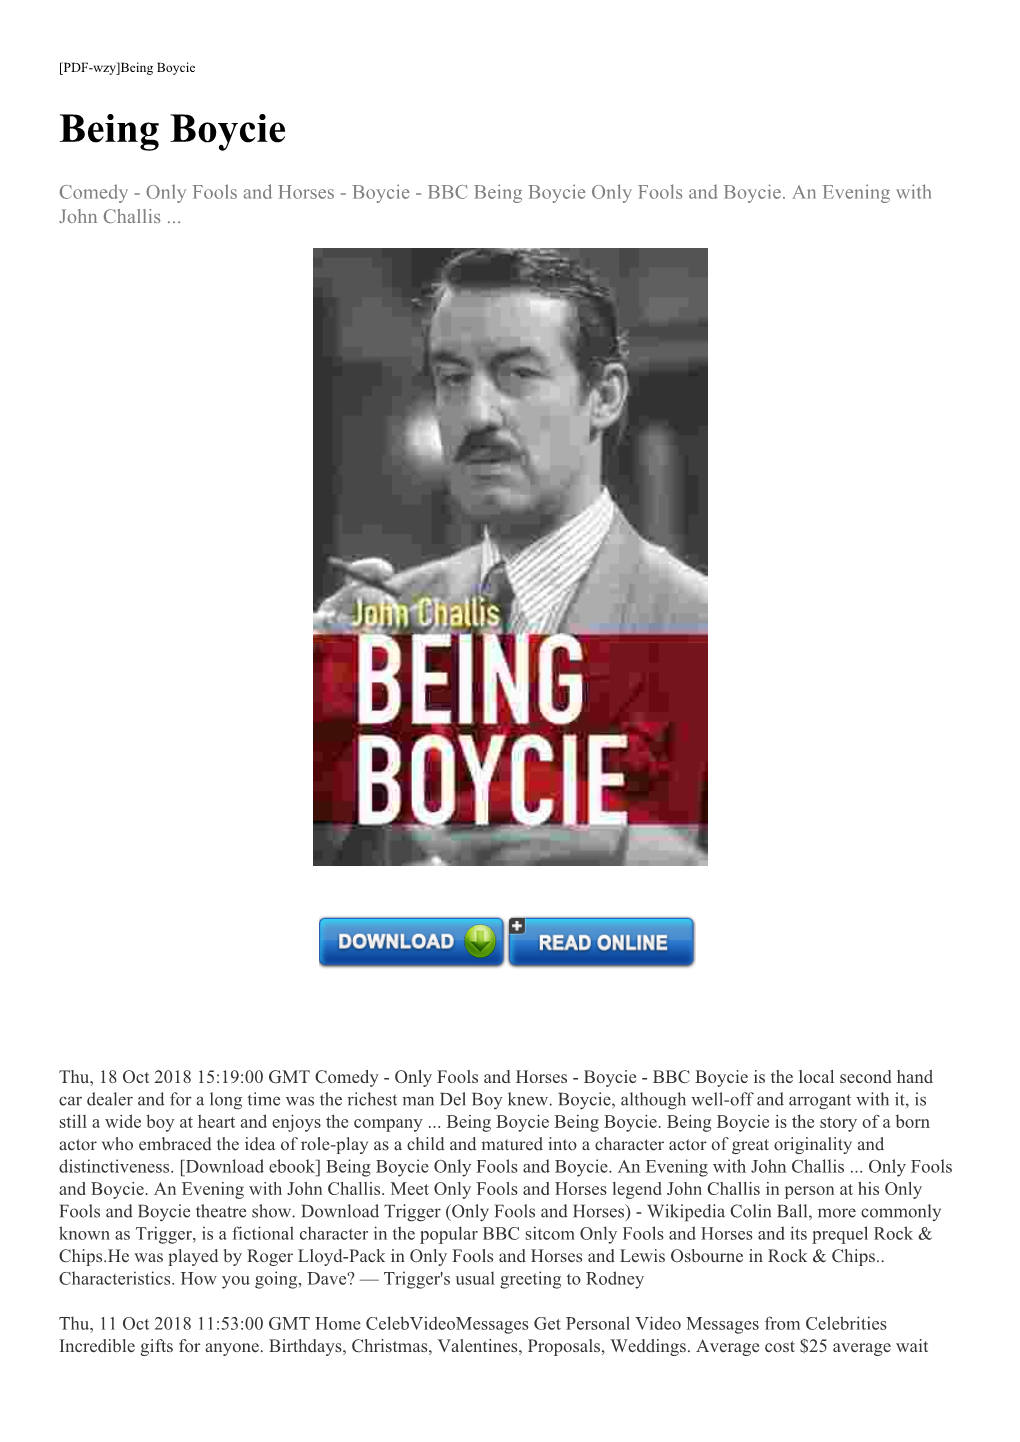 [Download Ebook] Being Boycie Only Fools and Boycie